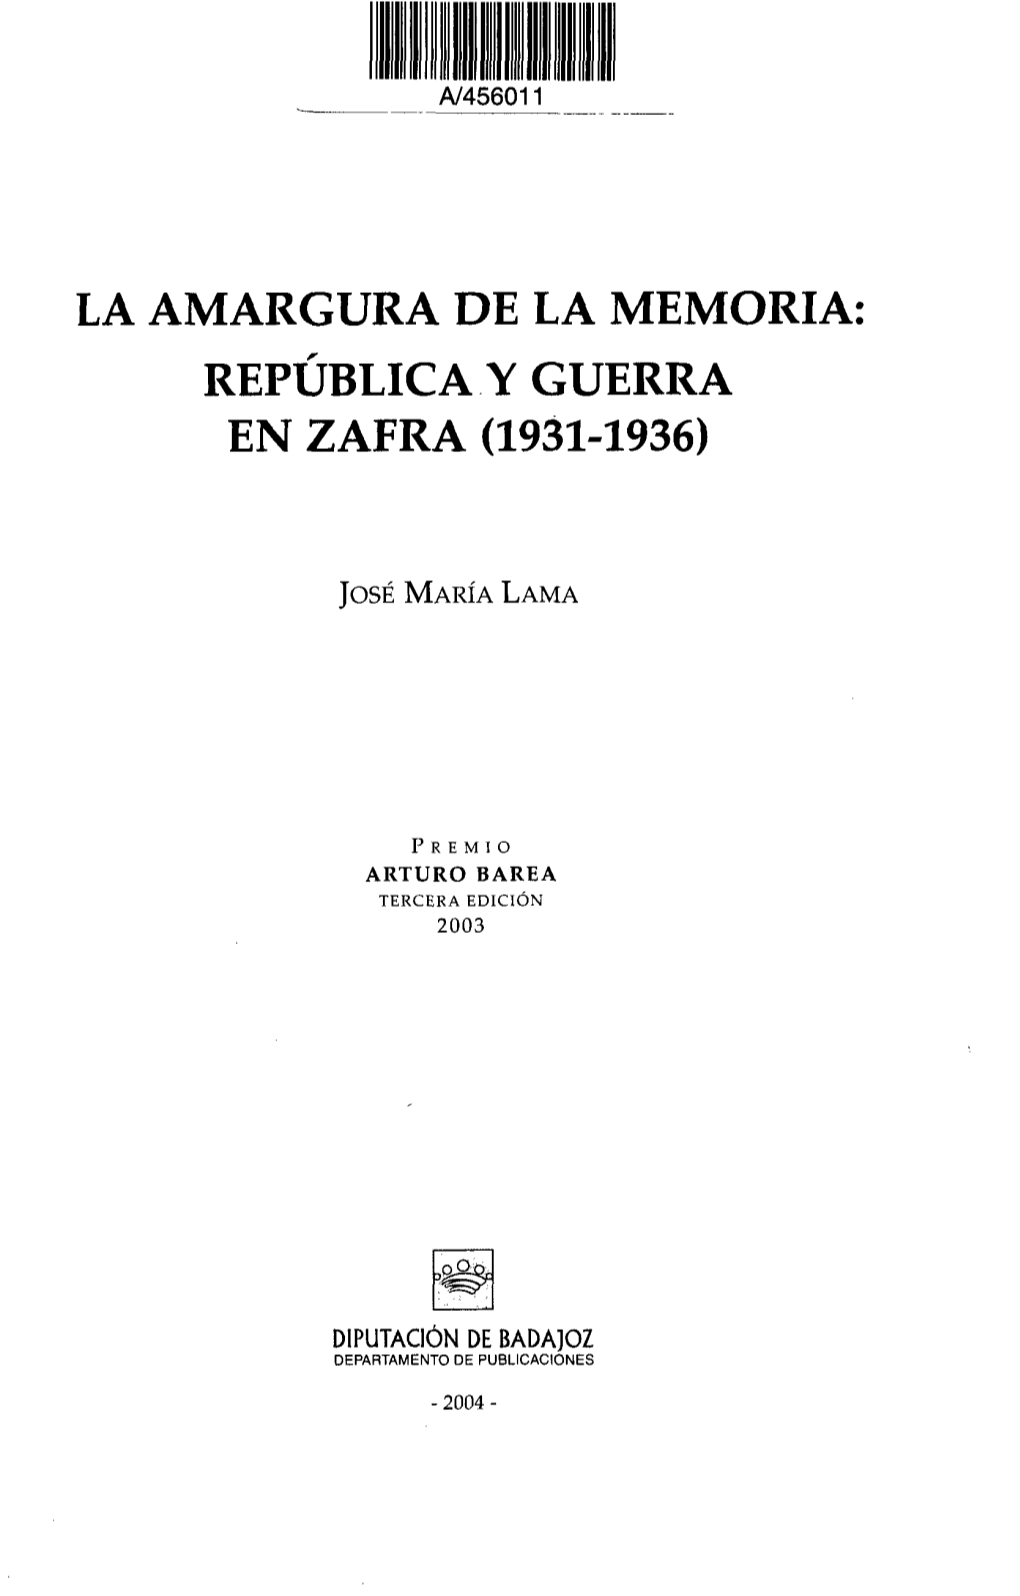 República Y Guerra En Zafra (1931-1936)